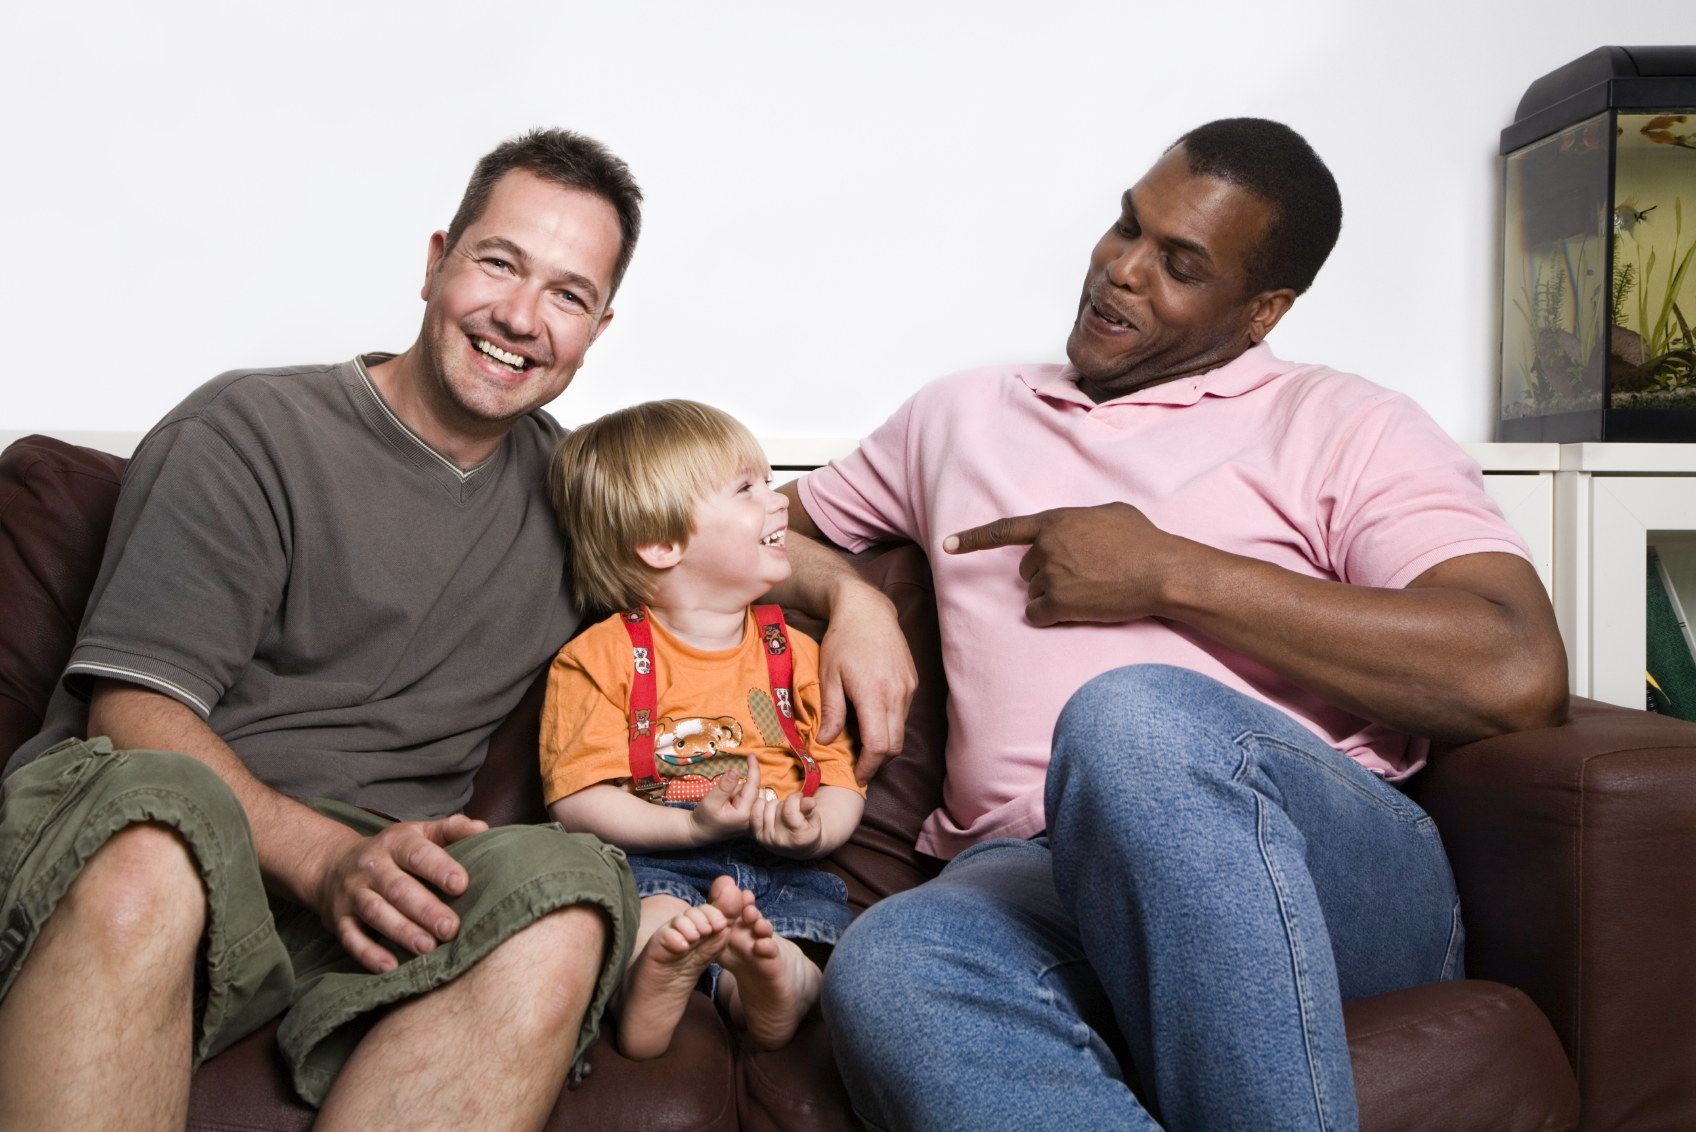 Djeca istospolnih roditelja su zdravija i bolje se slažu s roditeljima